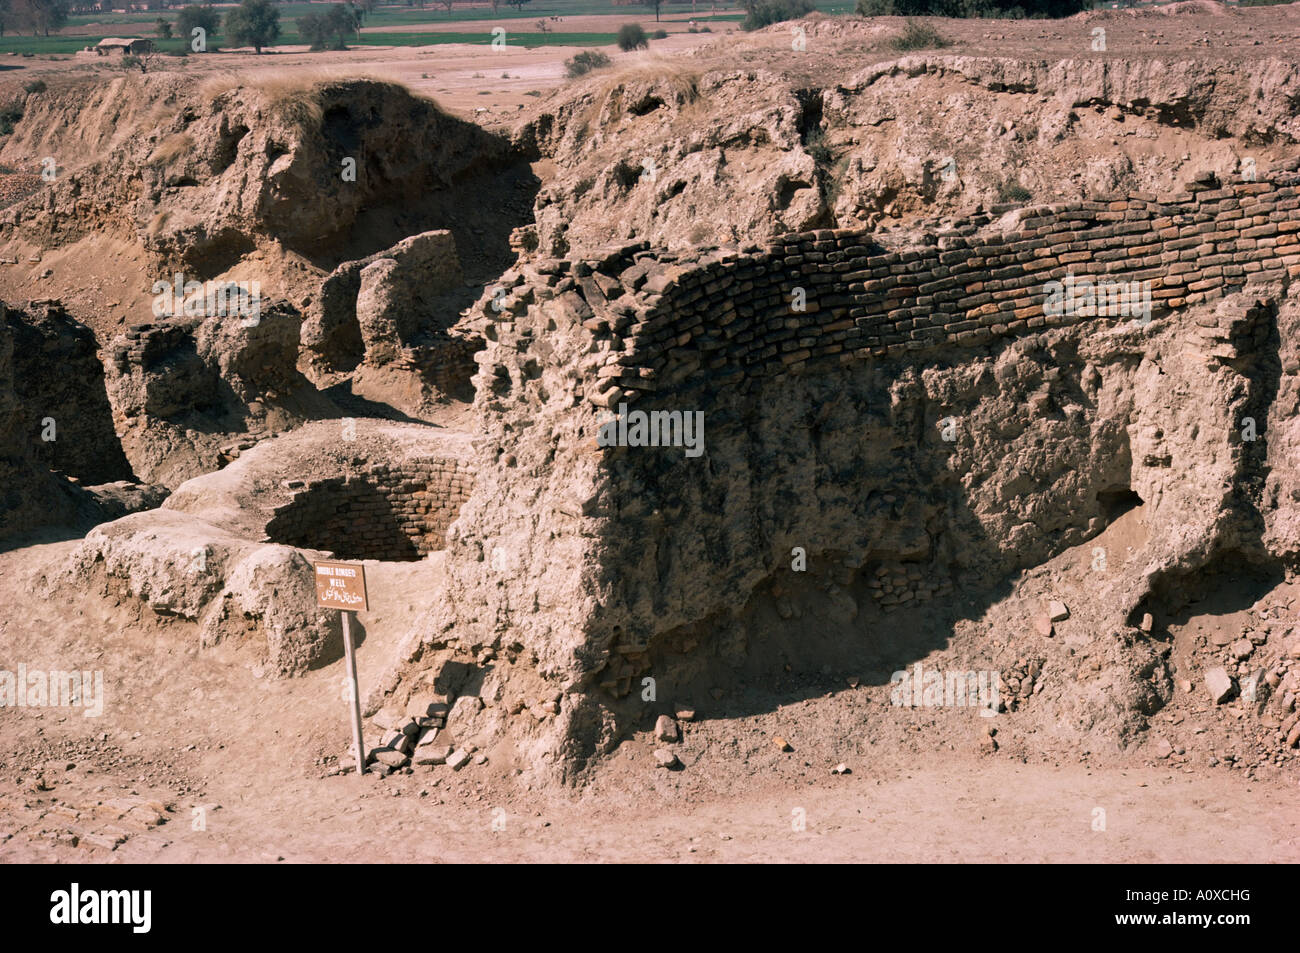 Die archäologische Stätte aus der Zeit zwischen 3000 und 1700 v. Chr. Harappa Indus Senke-Zivilisation Pakistan-Asien Stockfoto